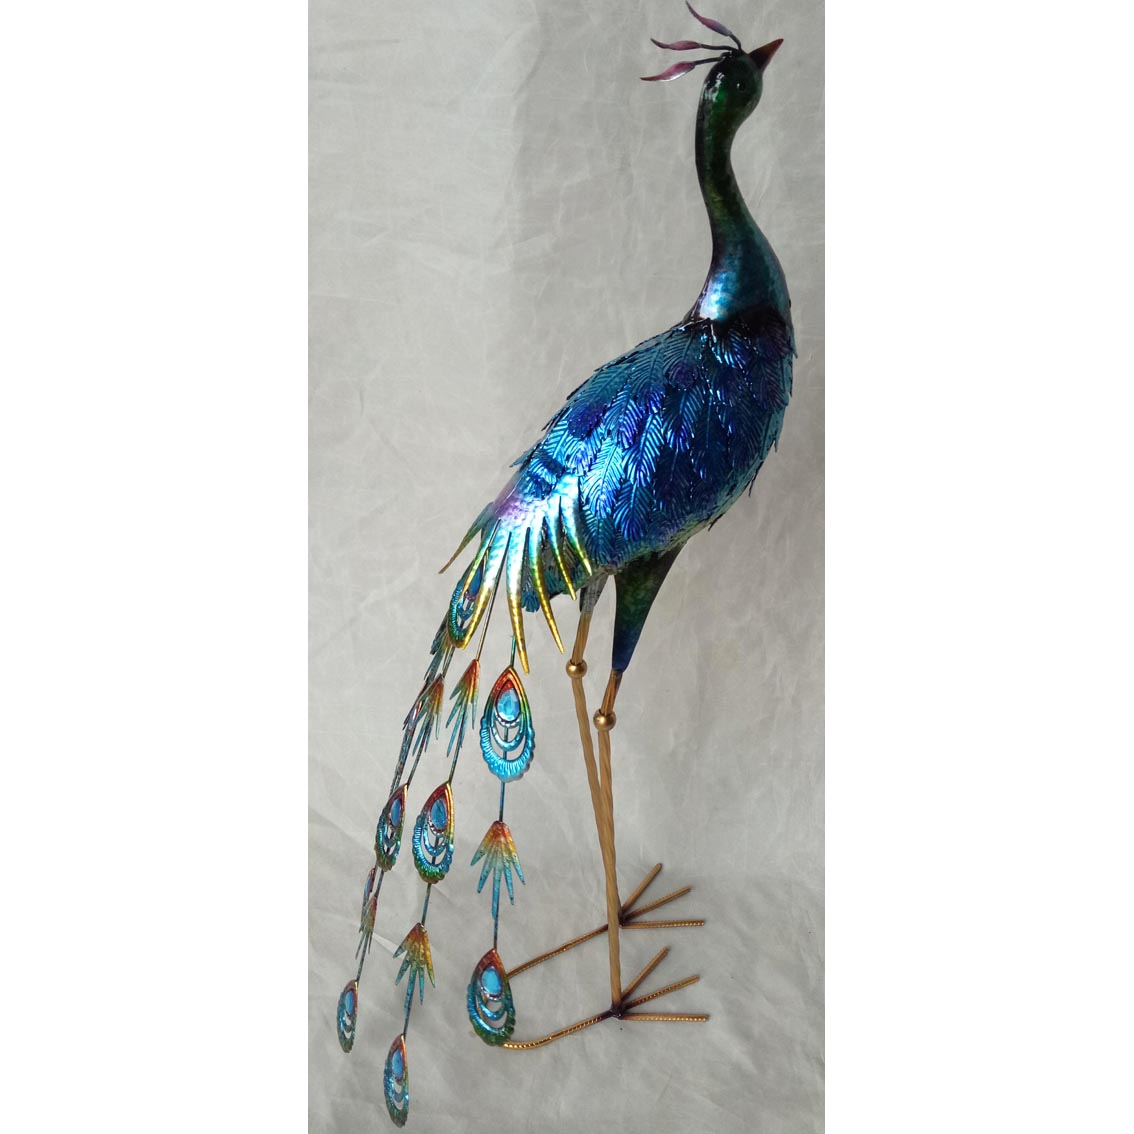 Hand-made metal garden decor peacock ornament